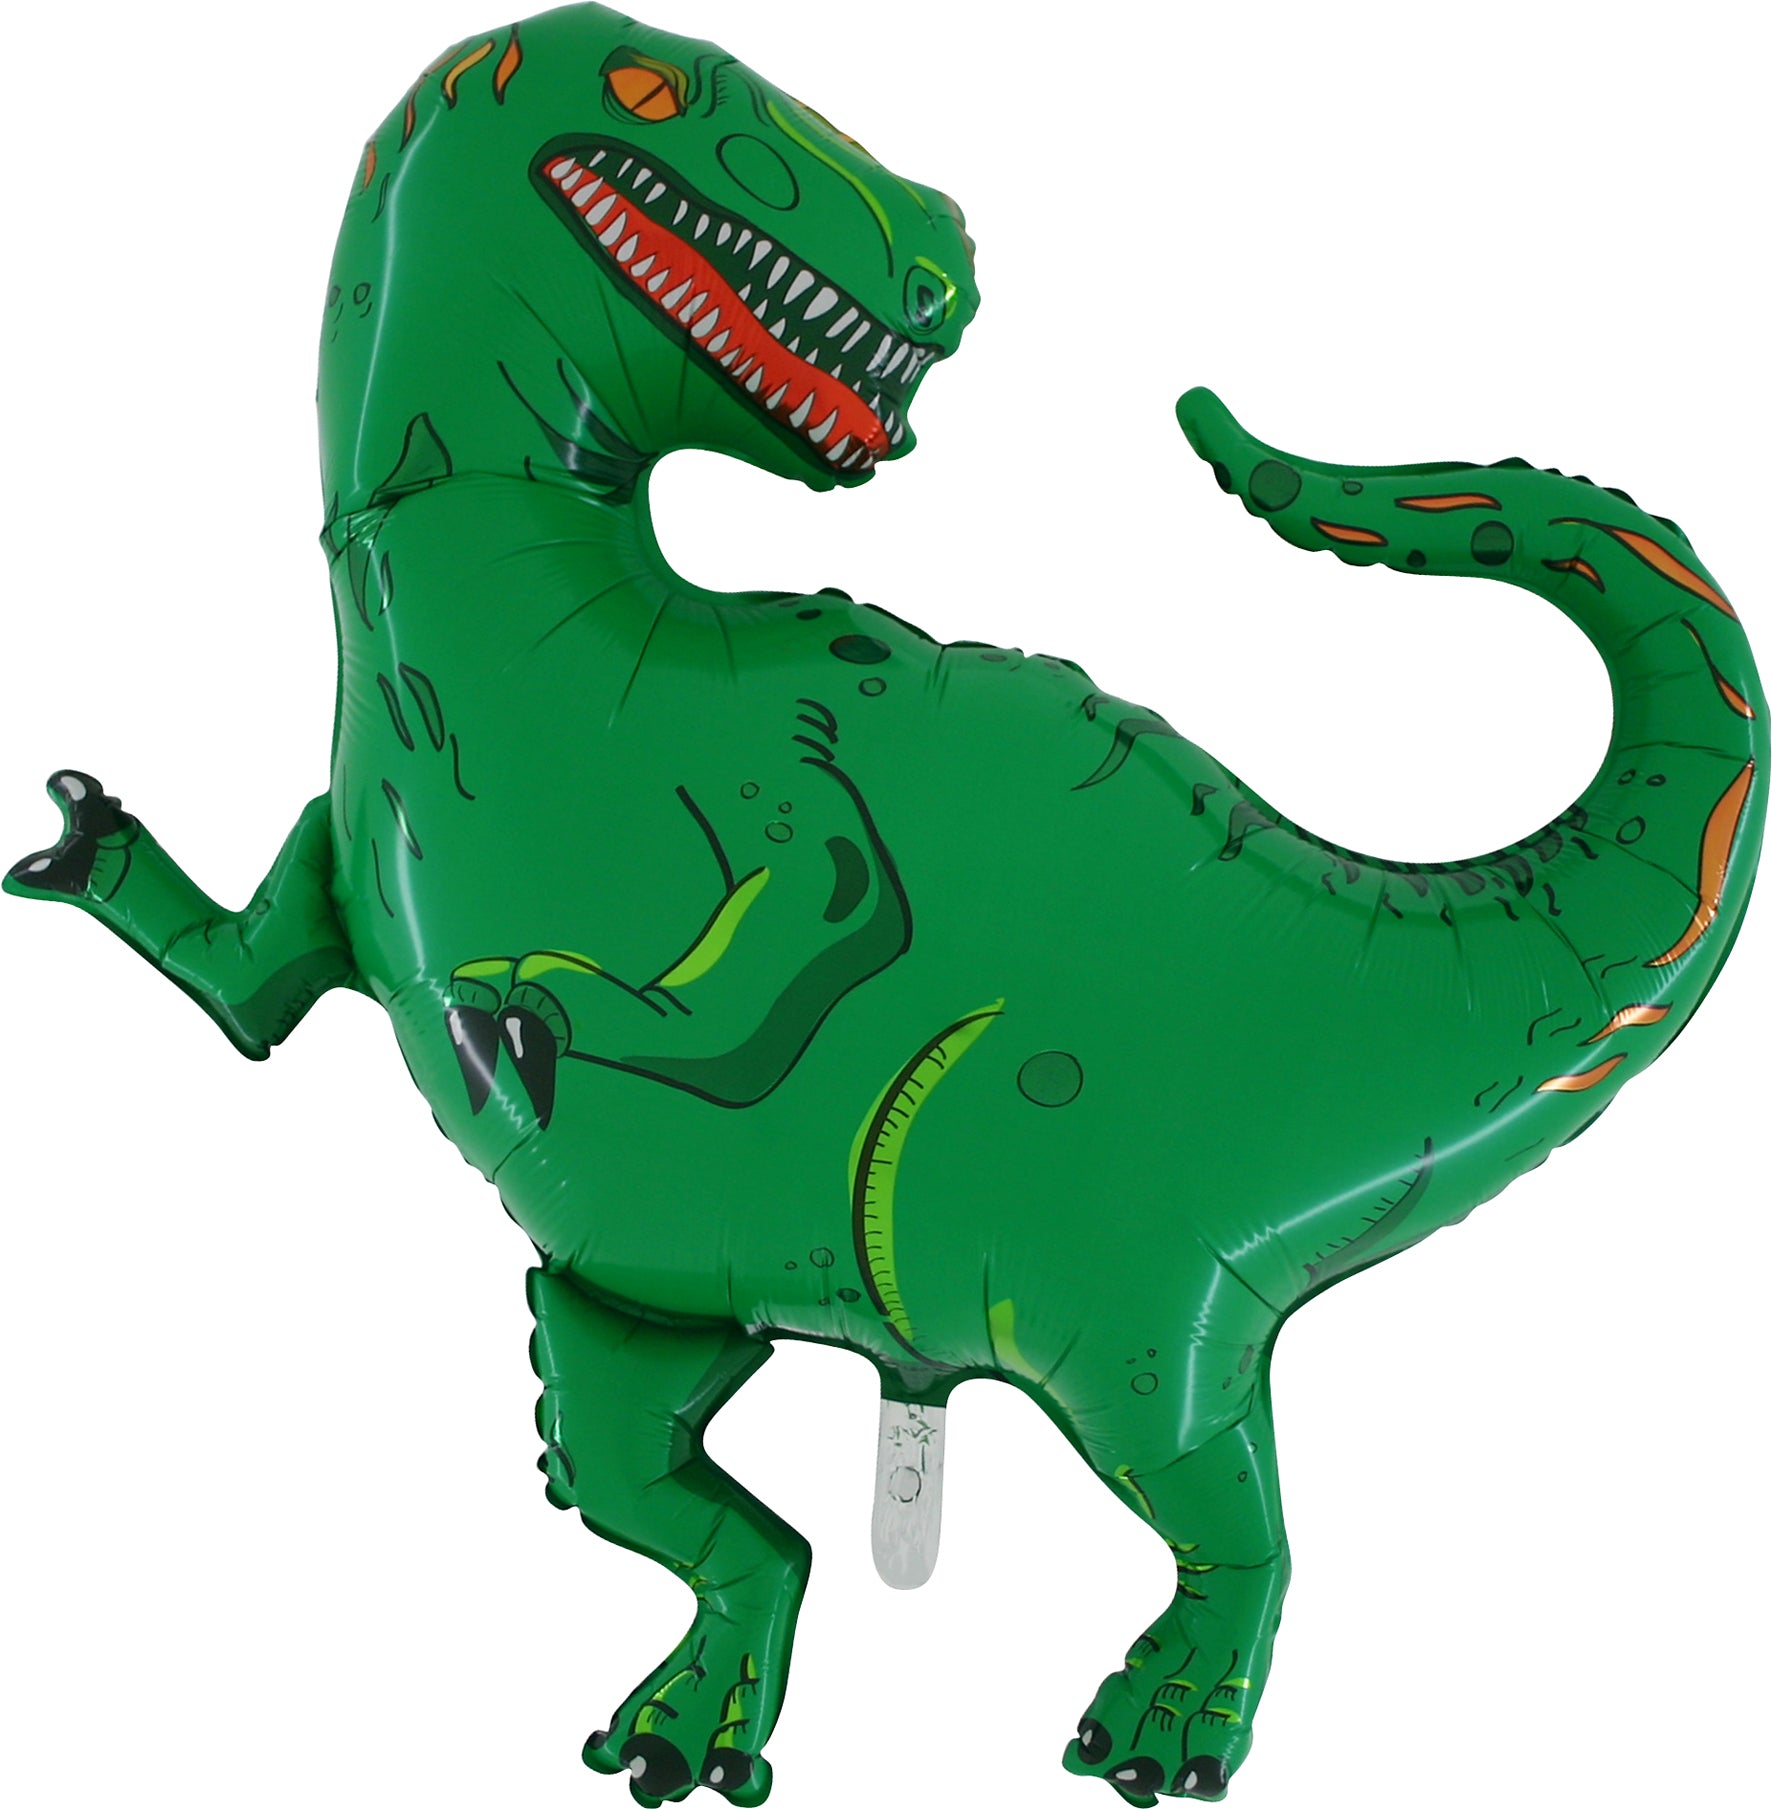 green dinosaur / tyrannosaurus shaped balloon